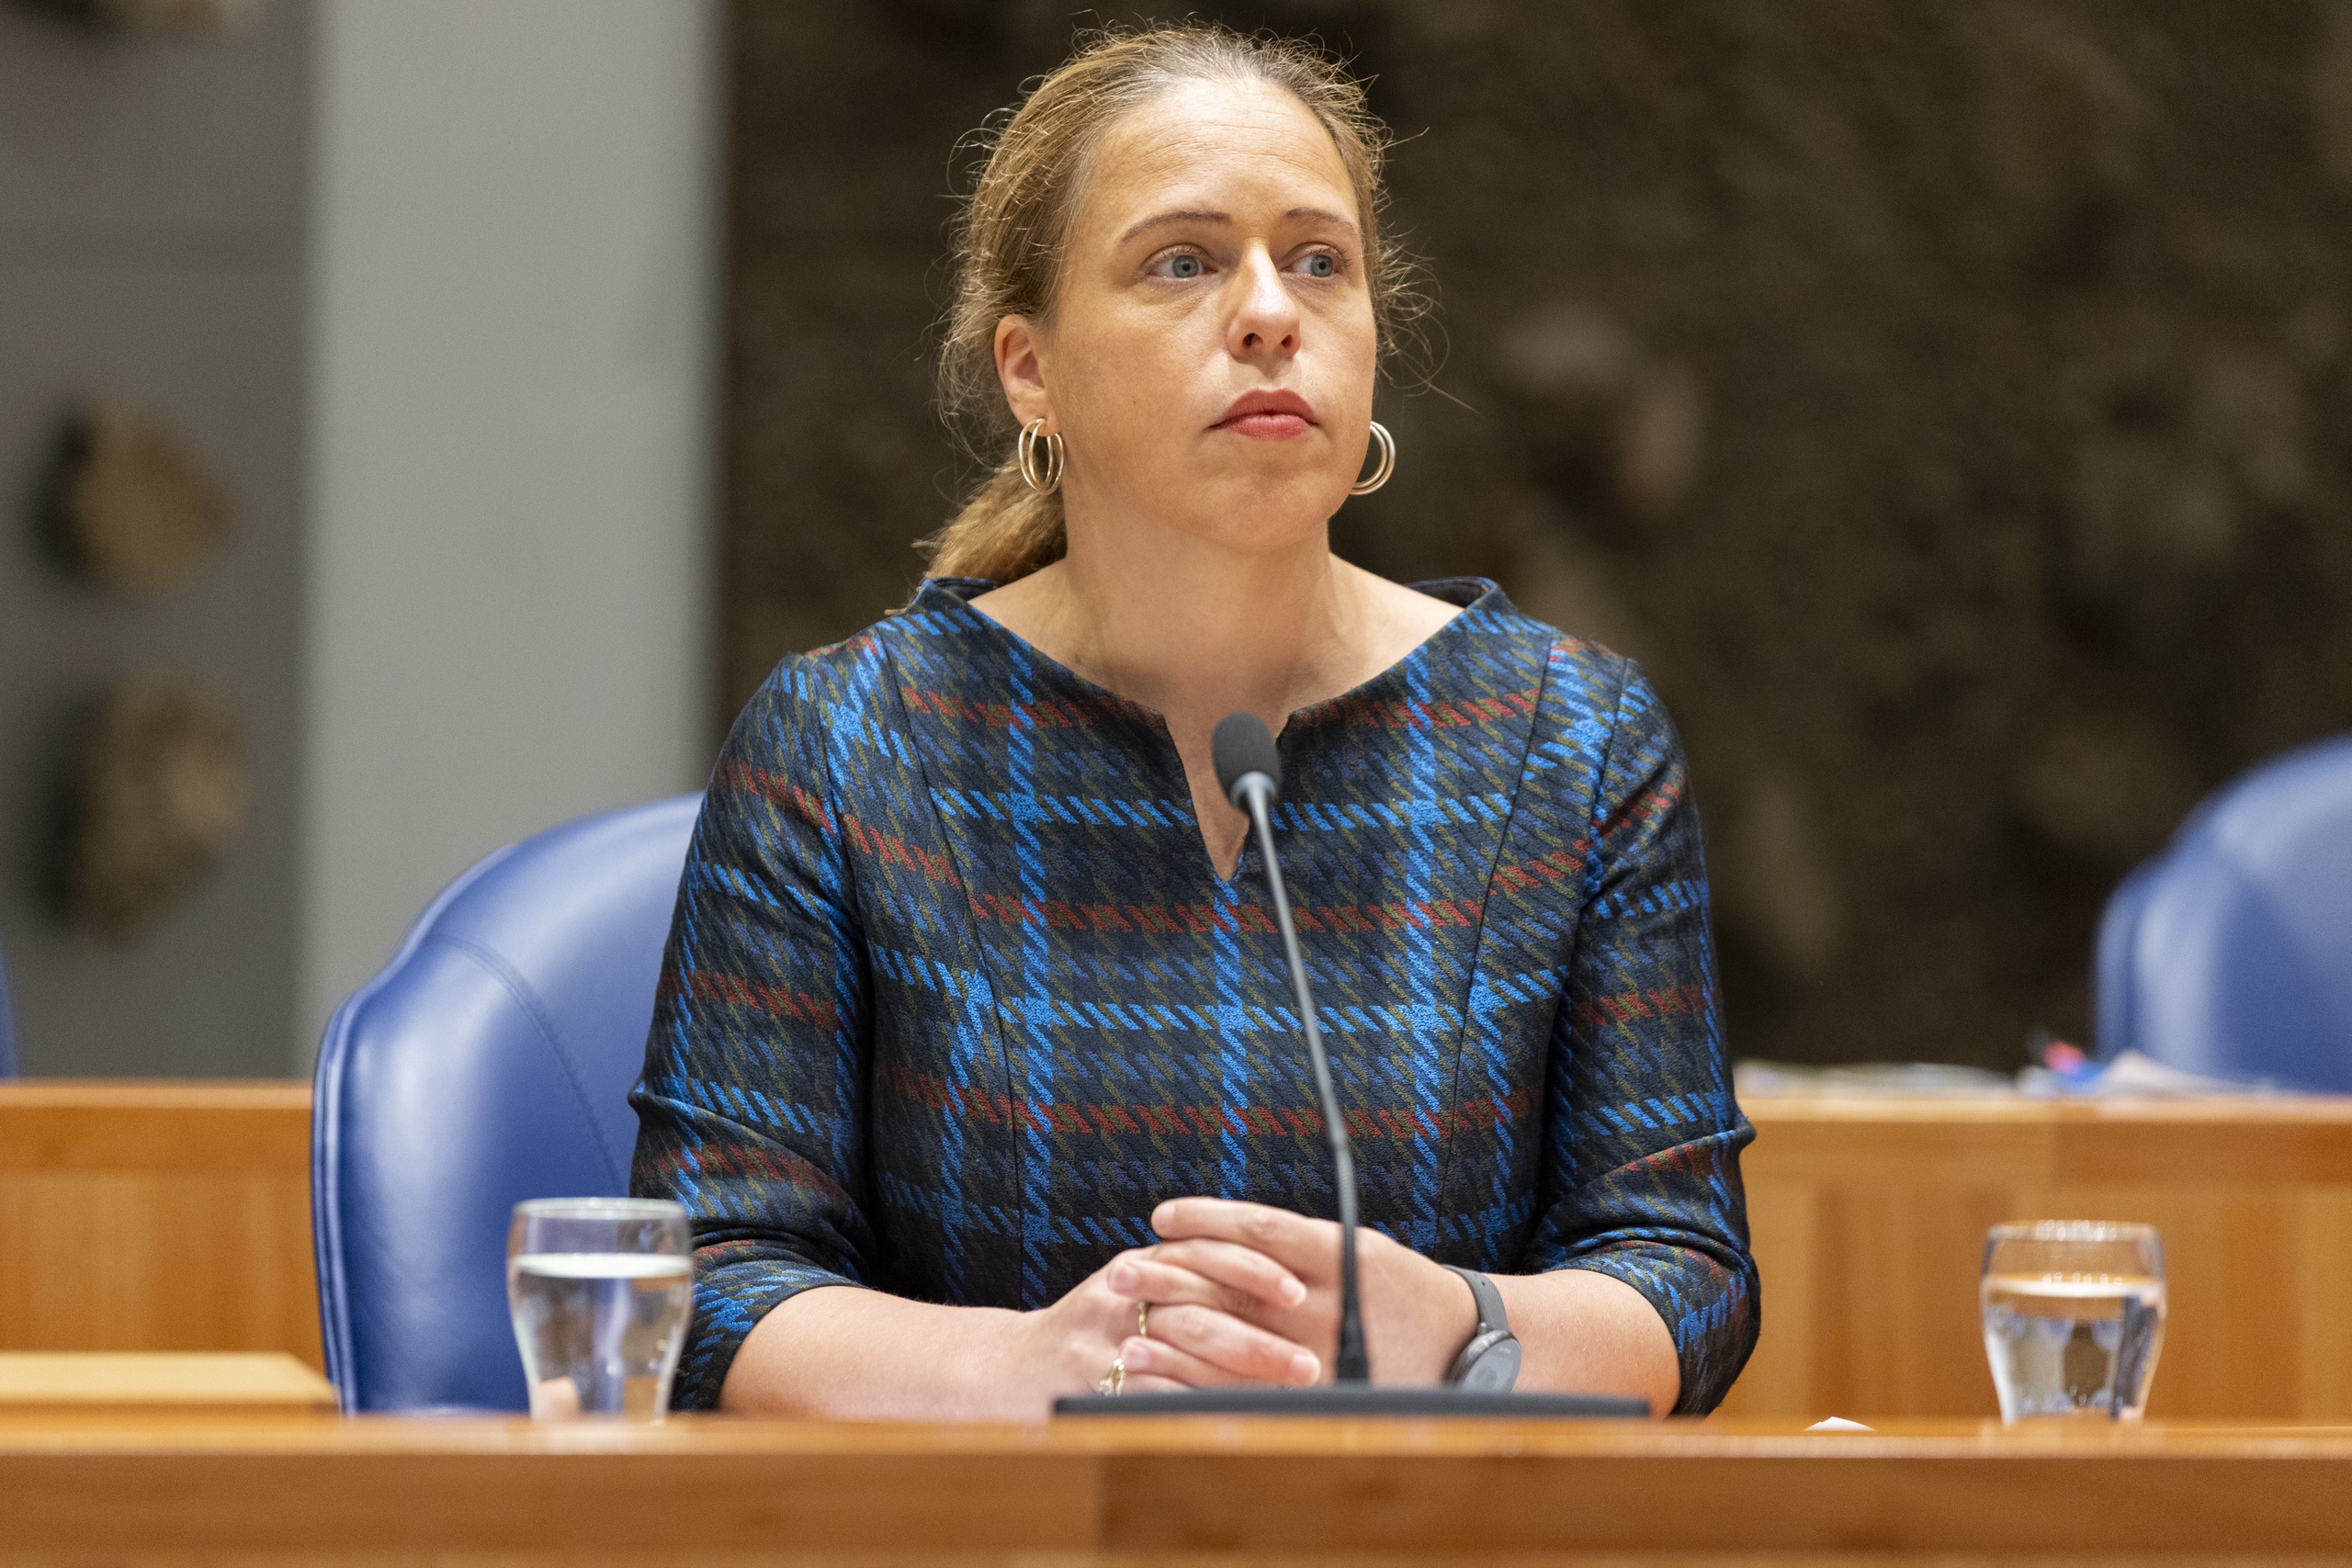 De uitzondering voor boeren was 'nooit vanzelfsprekend', benadrukte landbouwminister Carola Schouten tijdens haar eerste Kamerdebat op haar oude functie. 